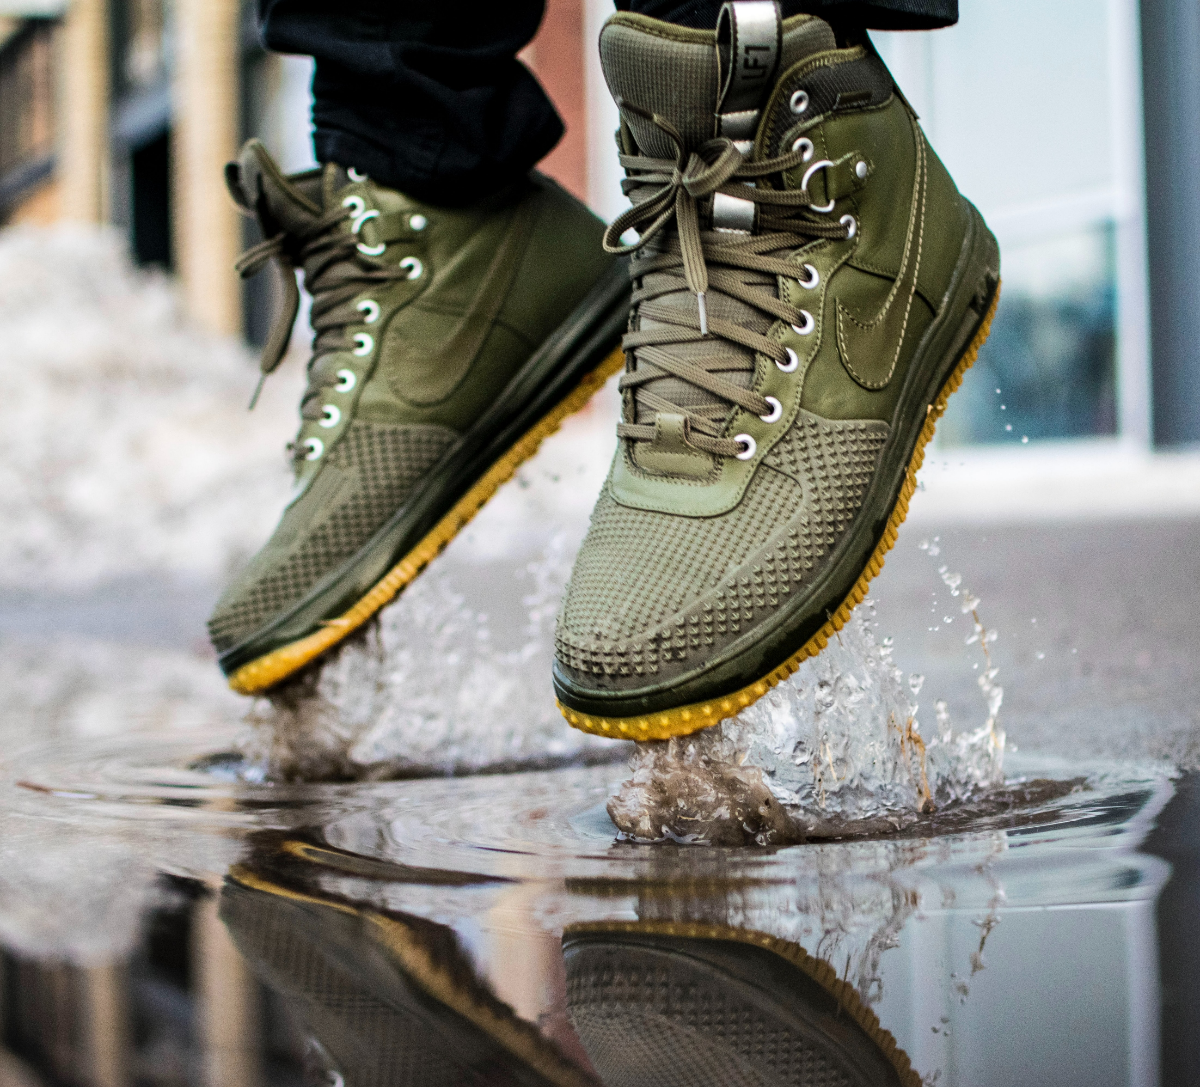 Schuhe wasserdicht machen mit Hausmitteln: So bleiben Ihre Füße auch bei  nassem Wetter trocken!